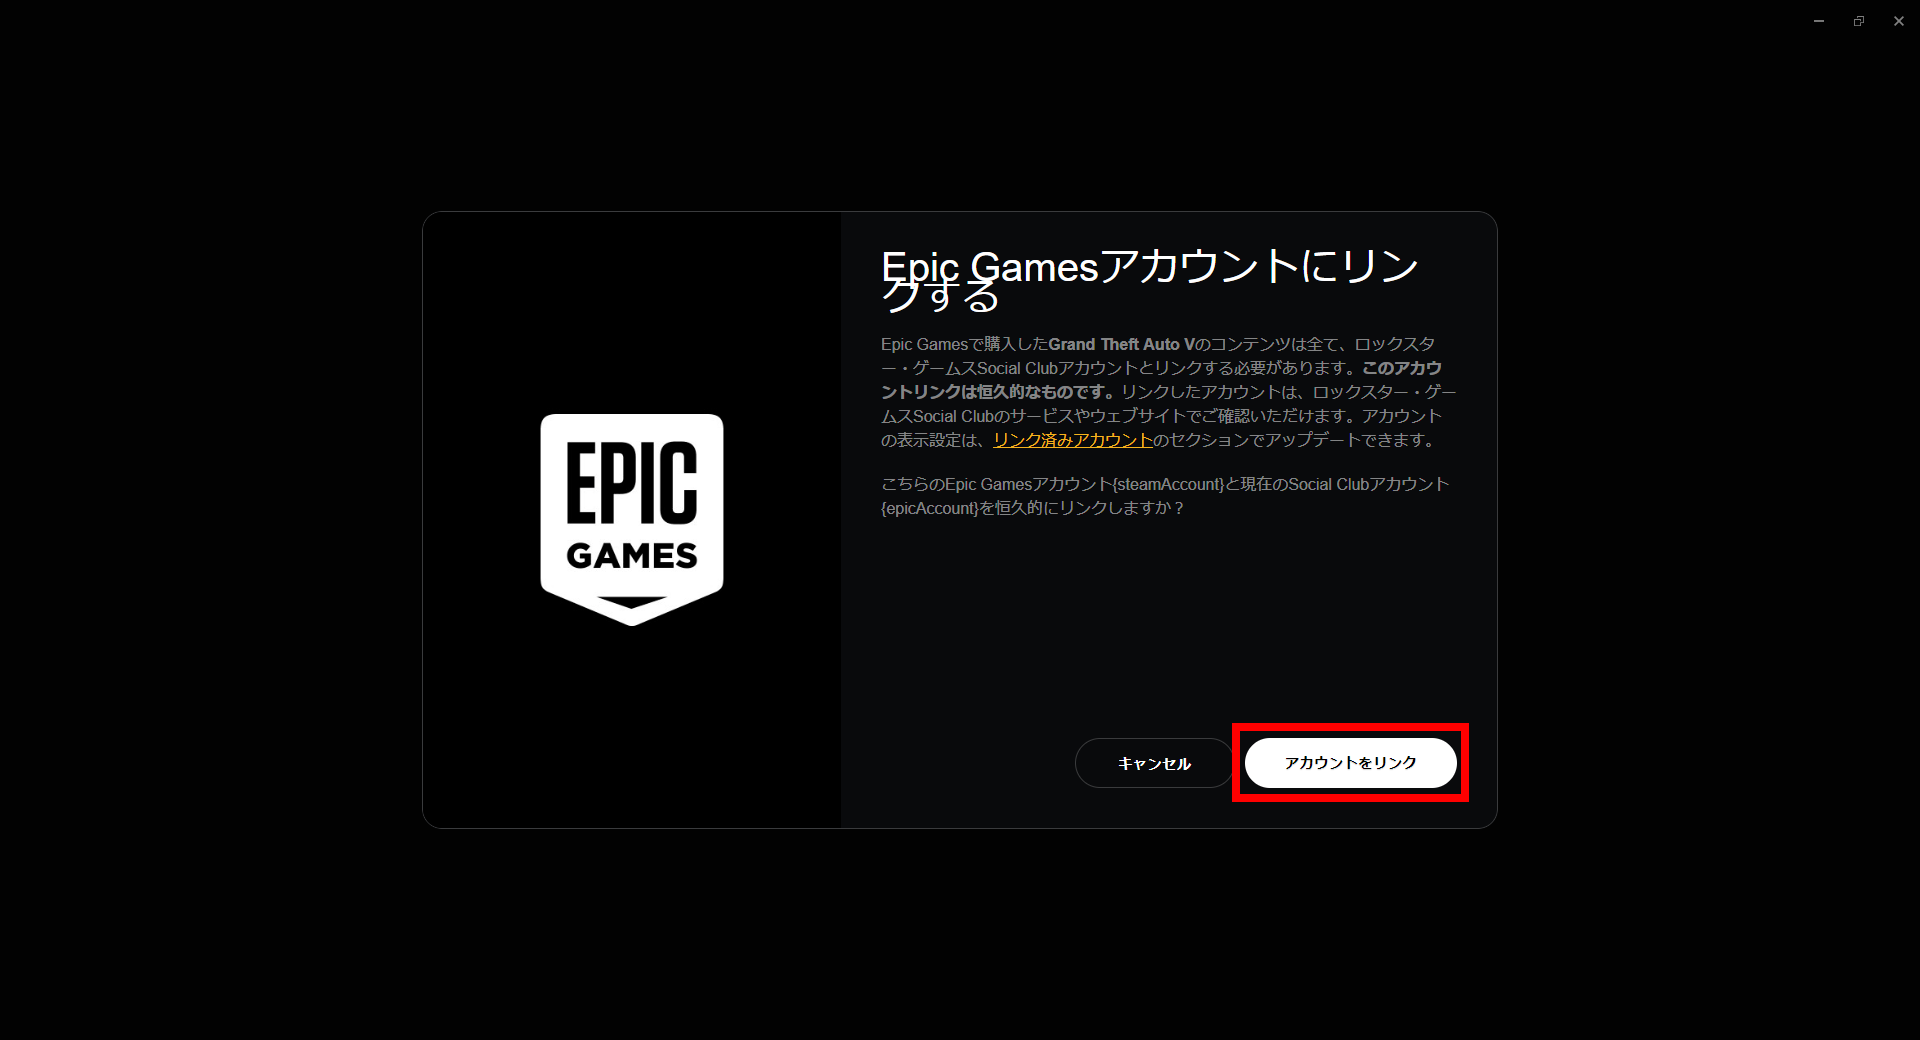 Epic Games でgta5 無料配布中 インストール方法からプレイ開始までを紹介 ちりつもぶろぐ